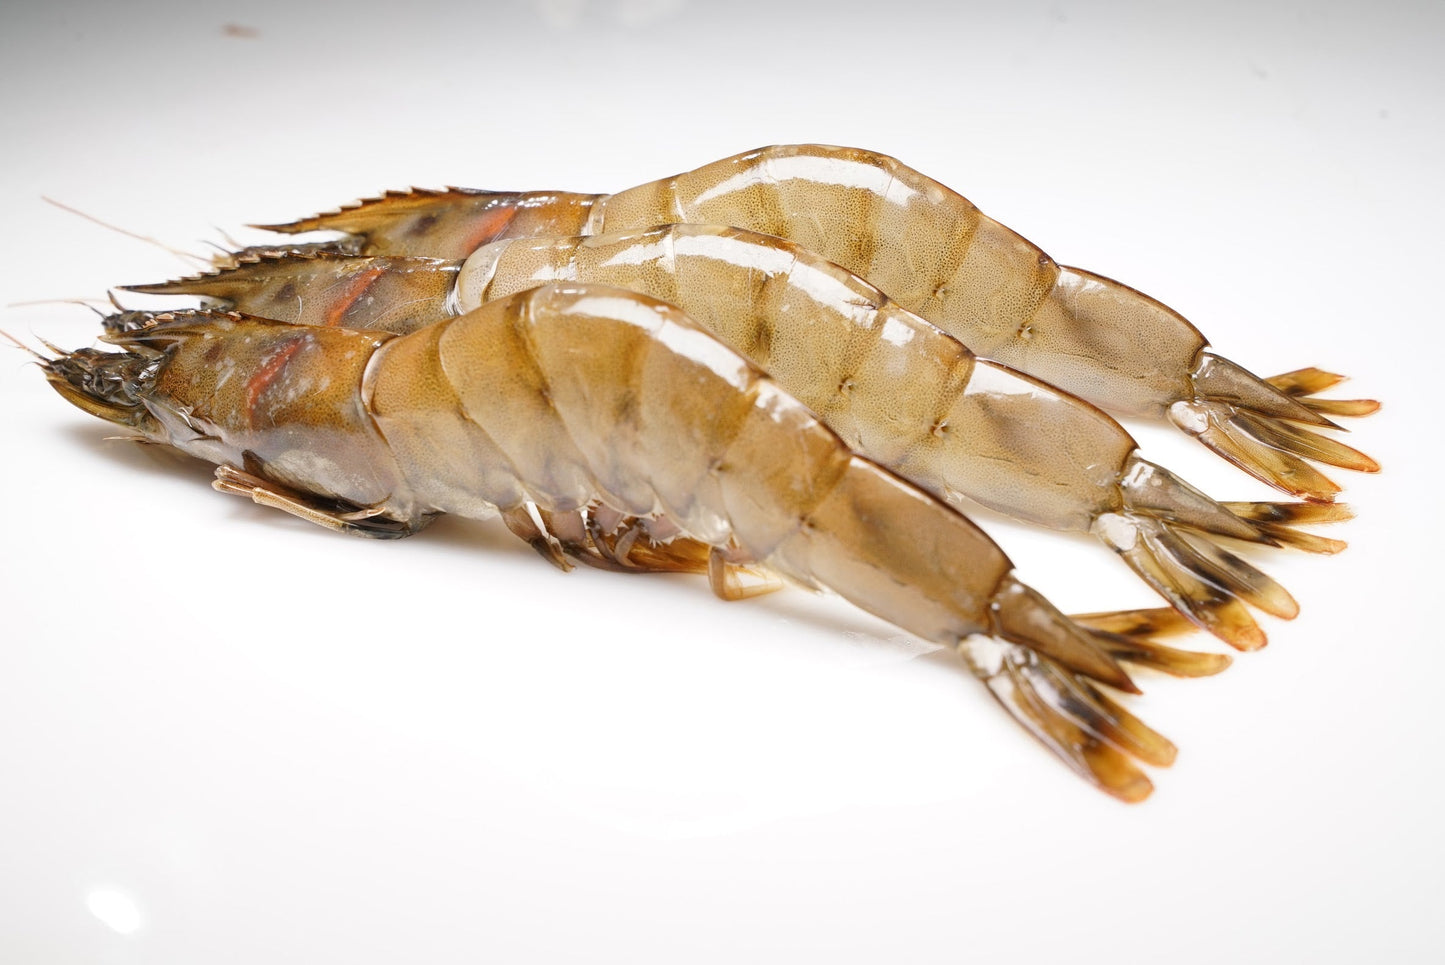 Red Deep Sea Crab Kauai Prawns And Premium Scallops 10 lbs